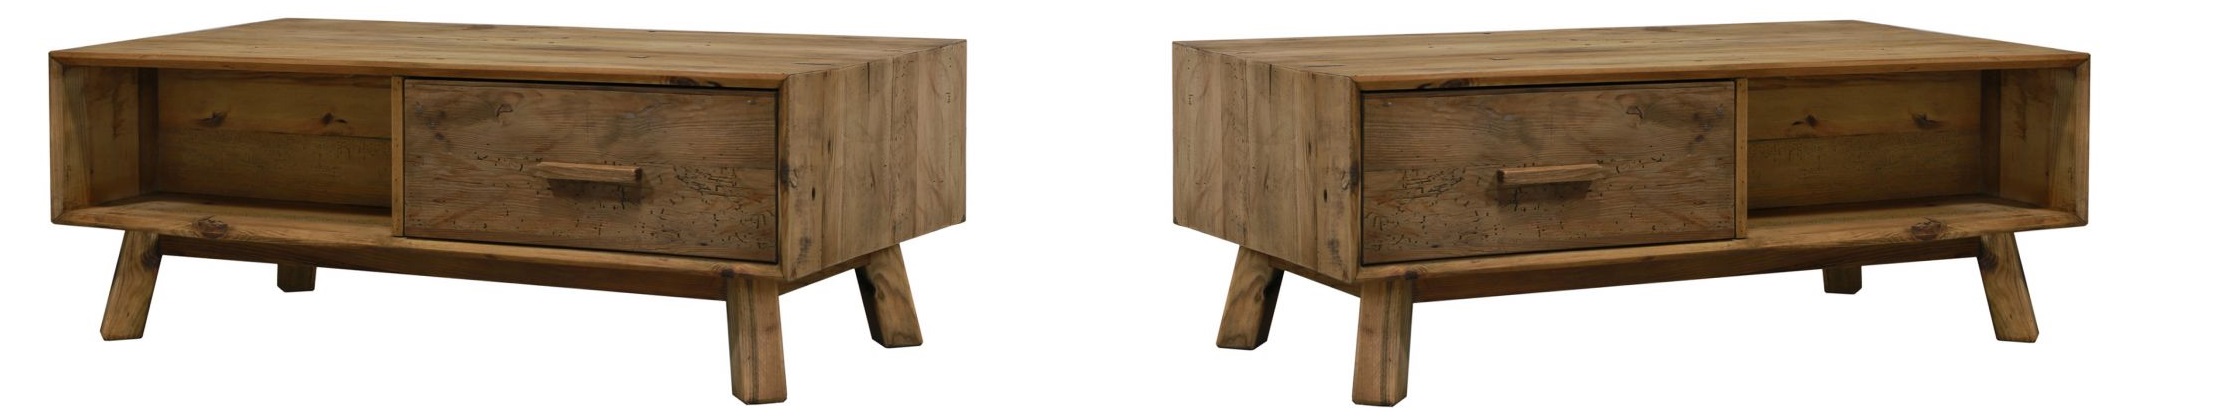 tavolino da salotto in legno con cassetti